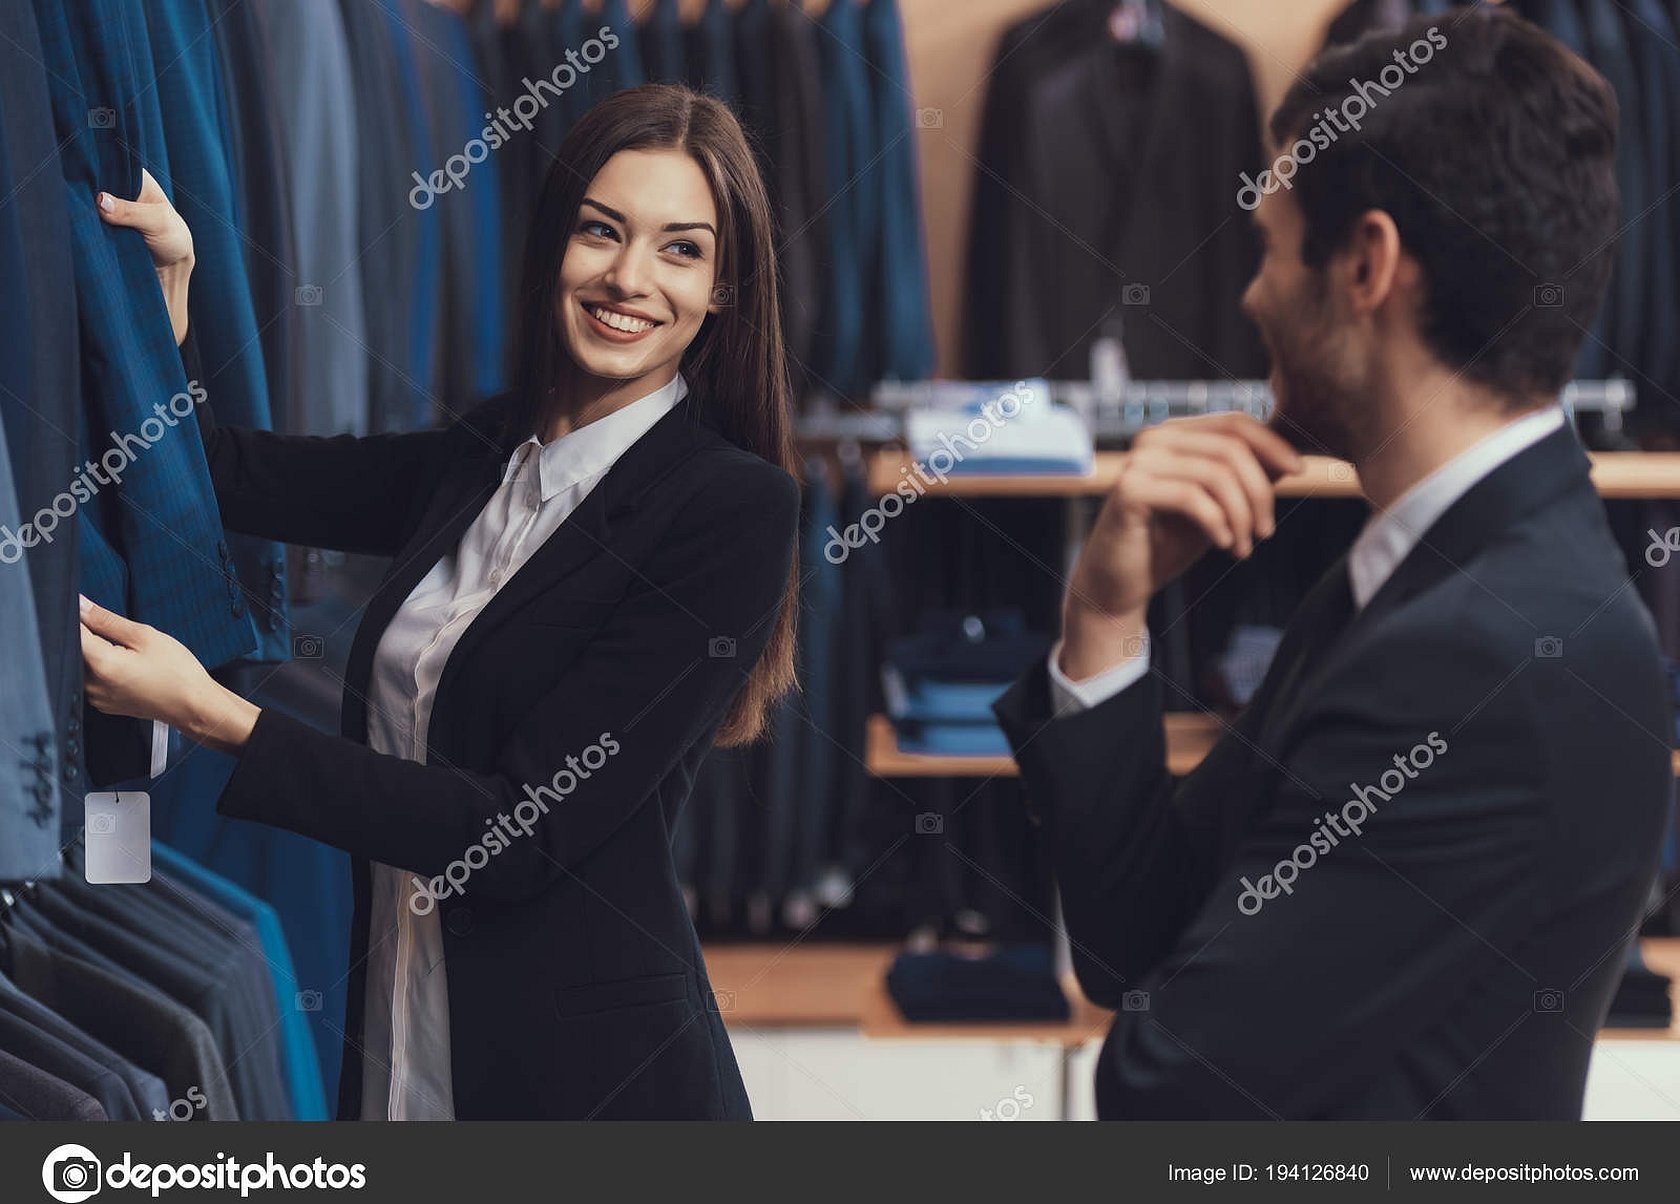 Shop assistant photo men